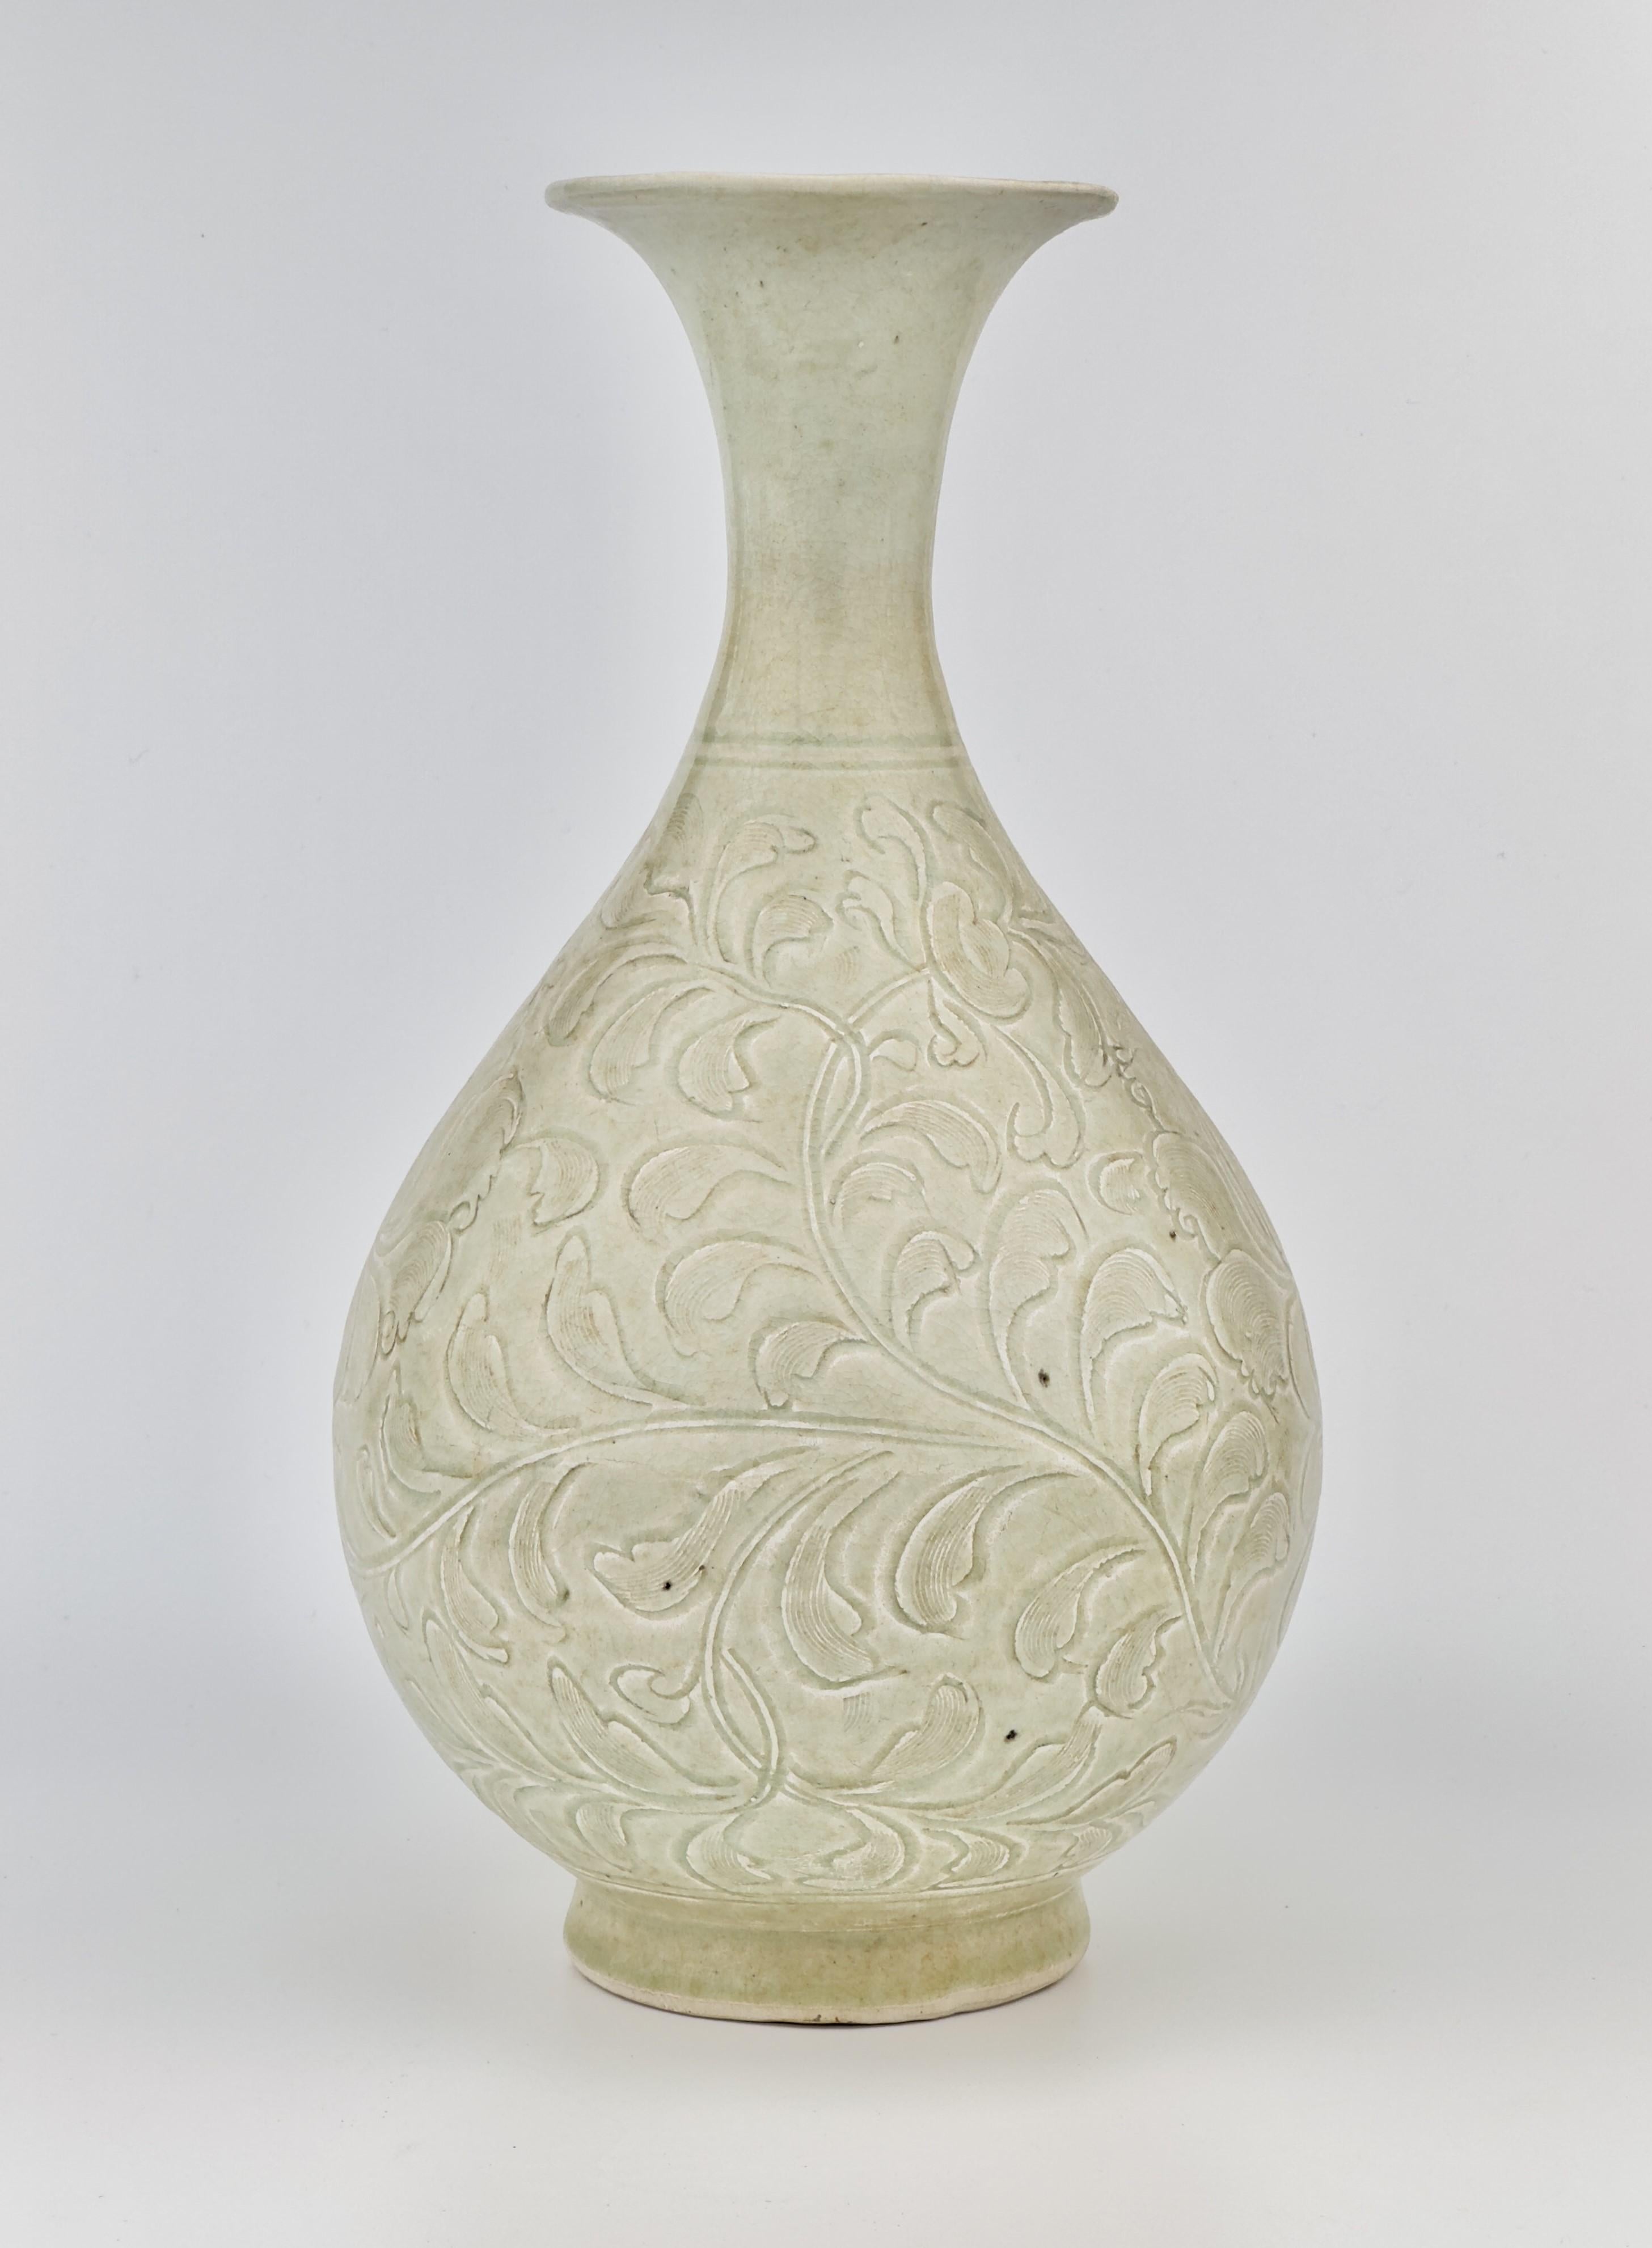 Der mit einer feinen bläulichen Glasur überzogene Korpus ist vollständig mit einem eingeschnittenen Dekor aus eleganten Blattrollen und blühenden Lotusblumen verziert. Yuhuchunping